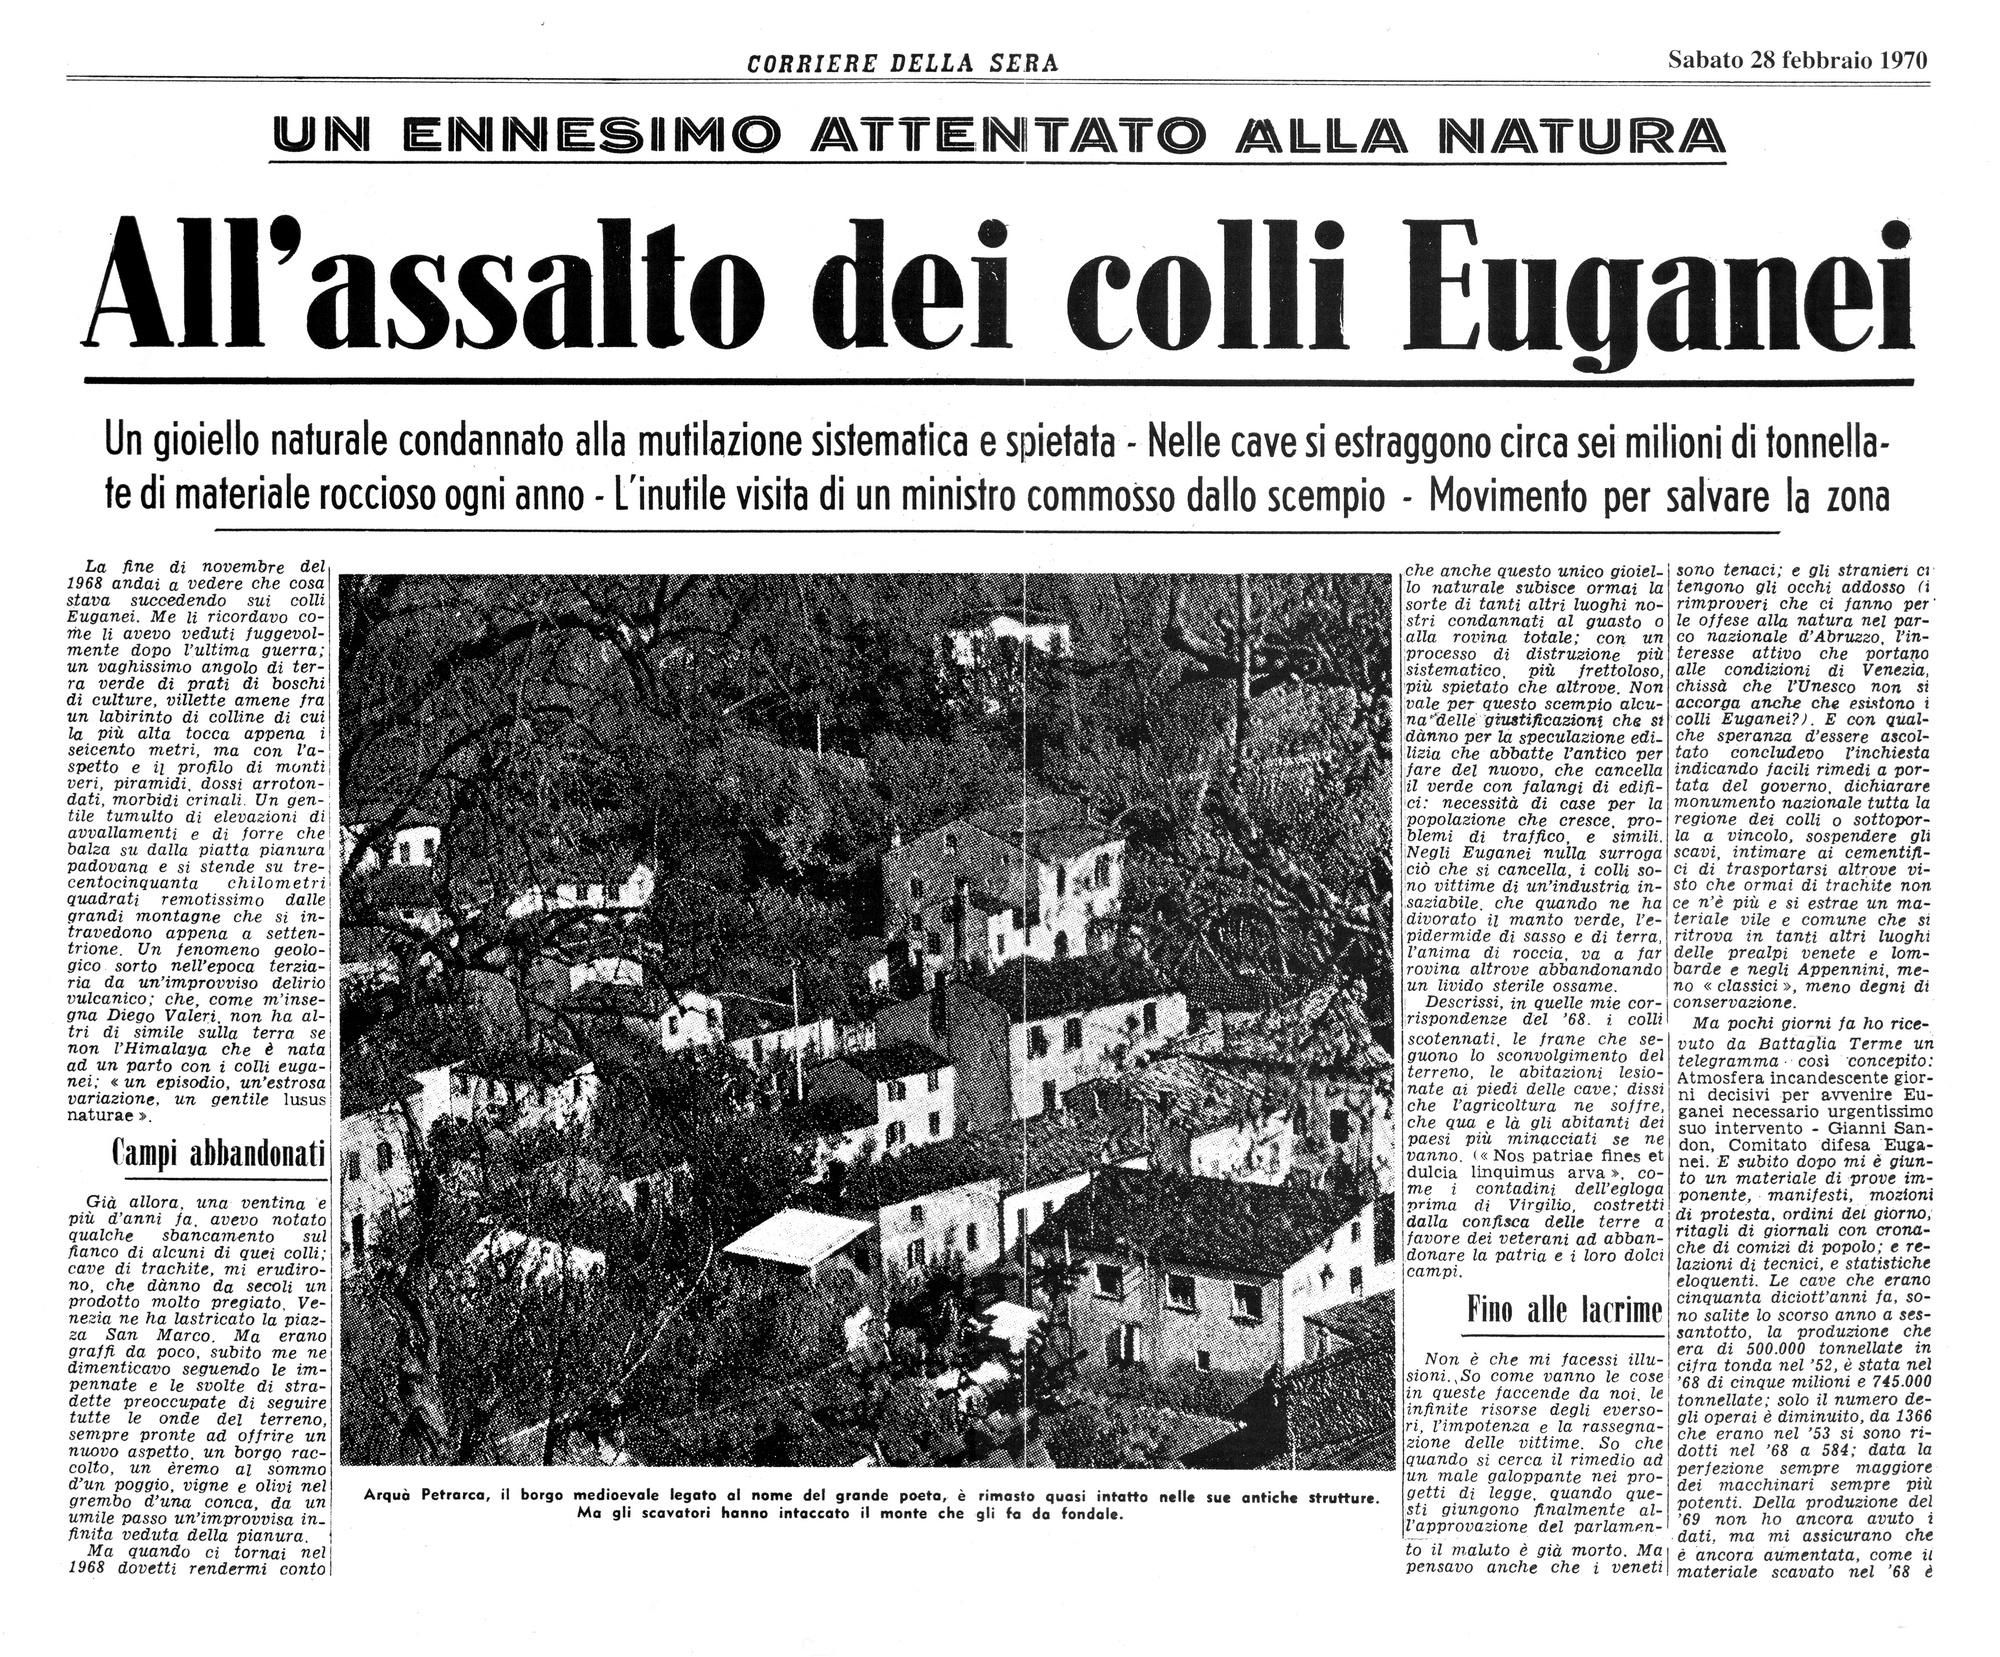 All'assalto dei colli Euganei. Articolo del 28 febbraio 1970, prima parte.